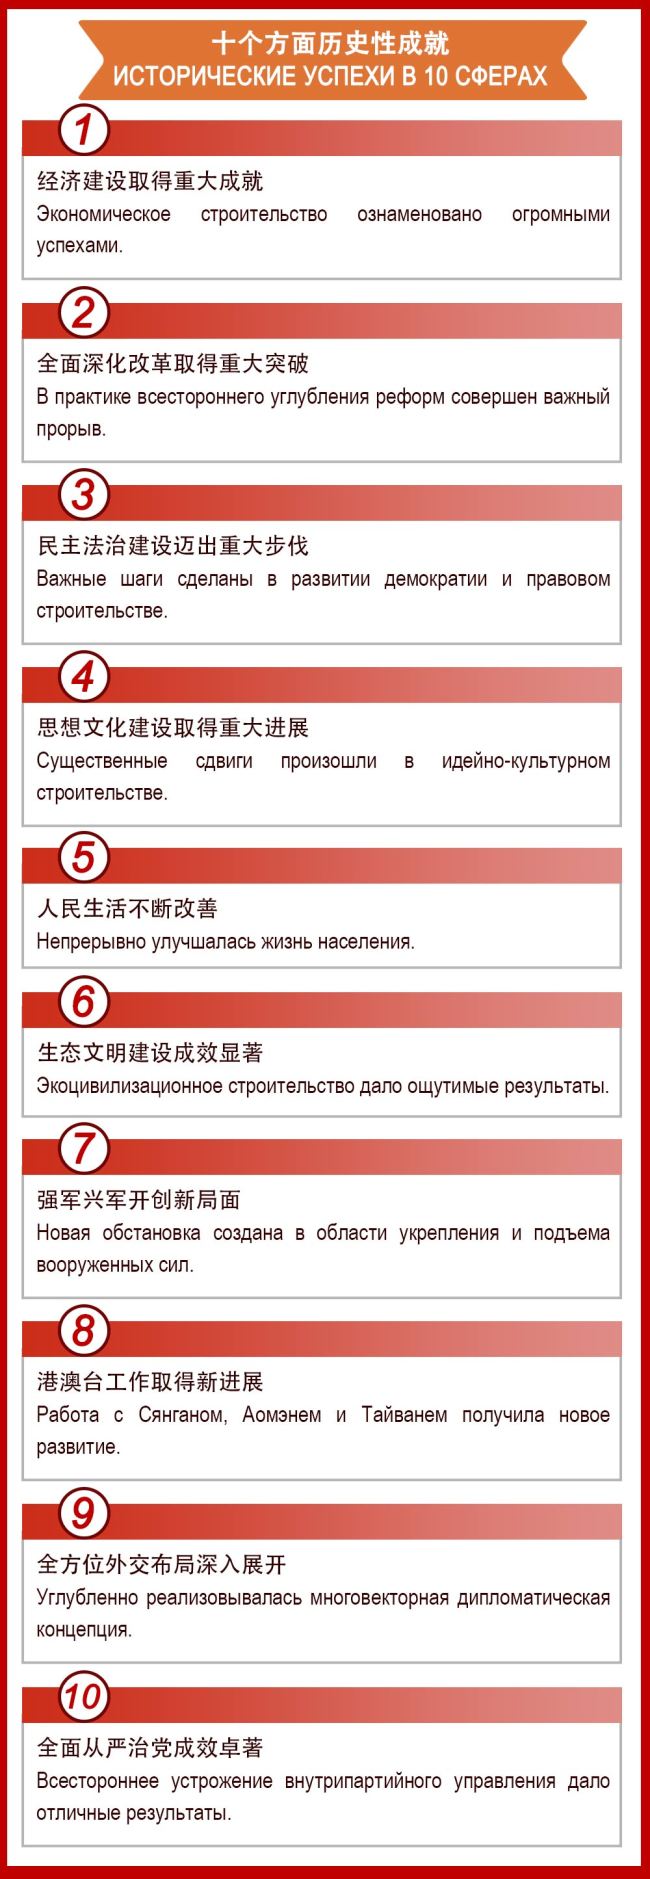 Основные аспекты доклада Си Цзиньпина на XIX съезде КПК